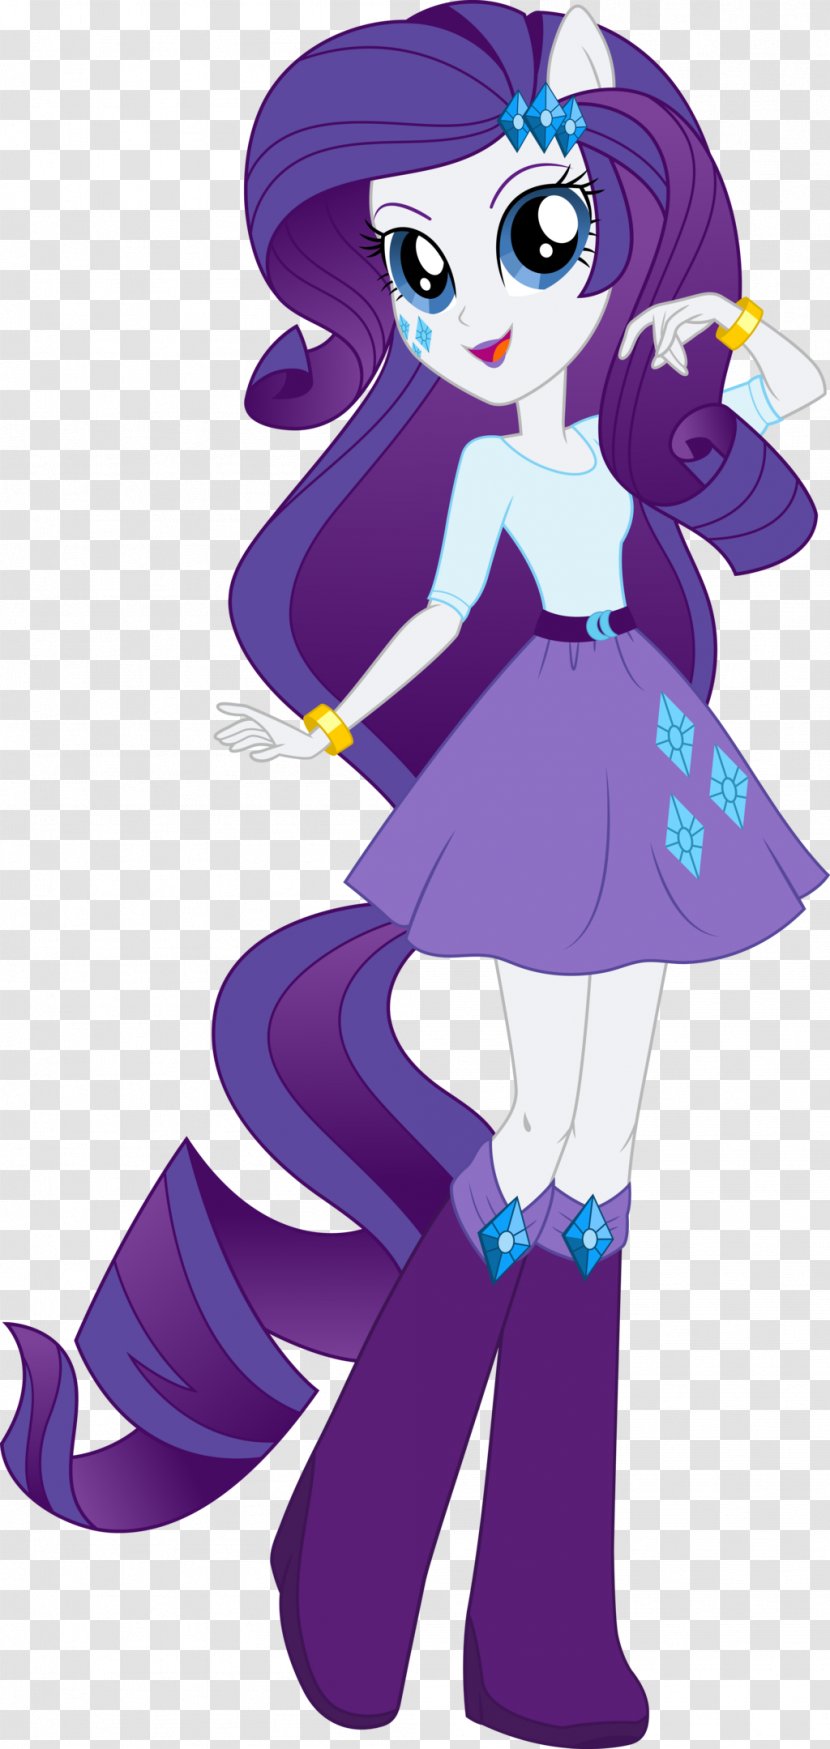 Rarity Rainbow Dash Twilight Sparkle Pony Princess Luna - Tree - Equestria Girls Polyvore Transparent PNG